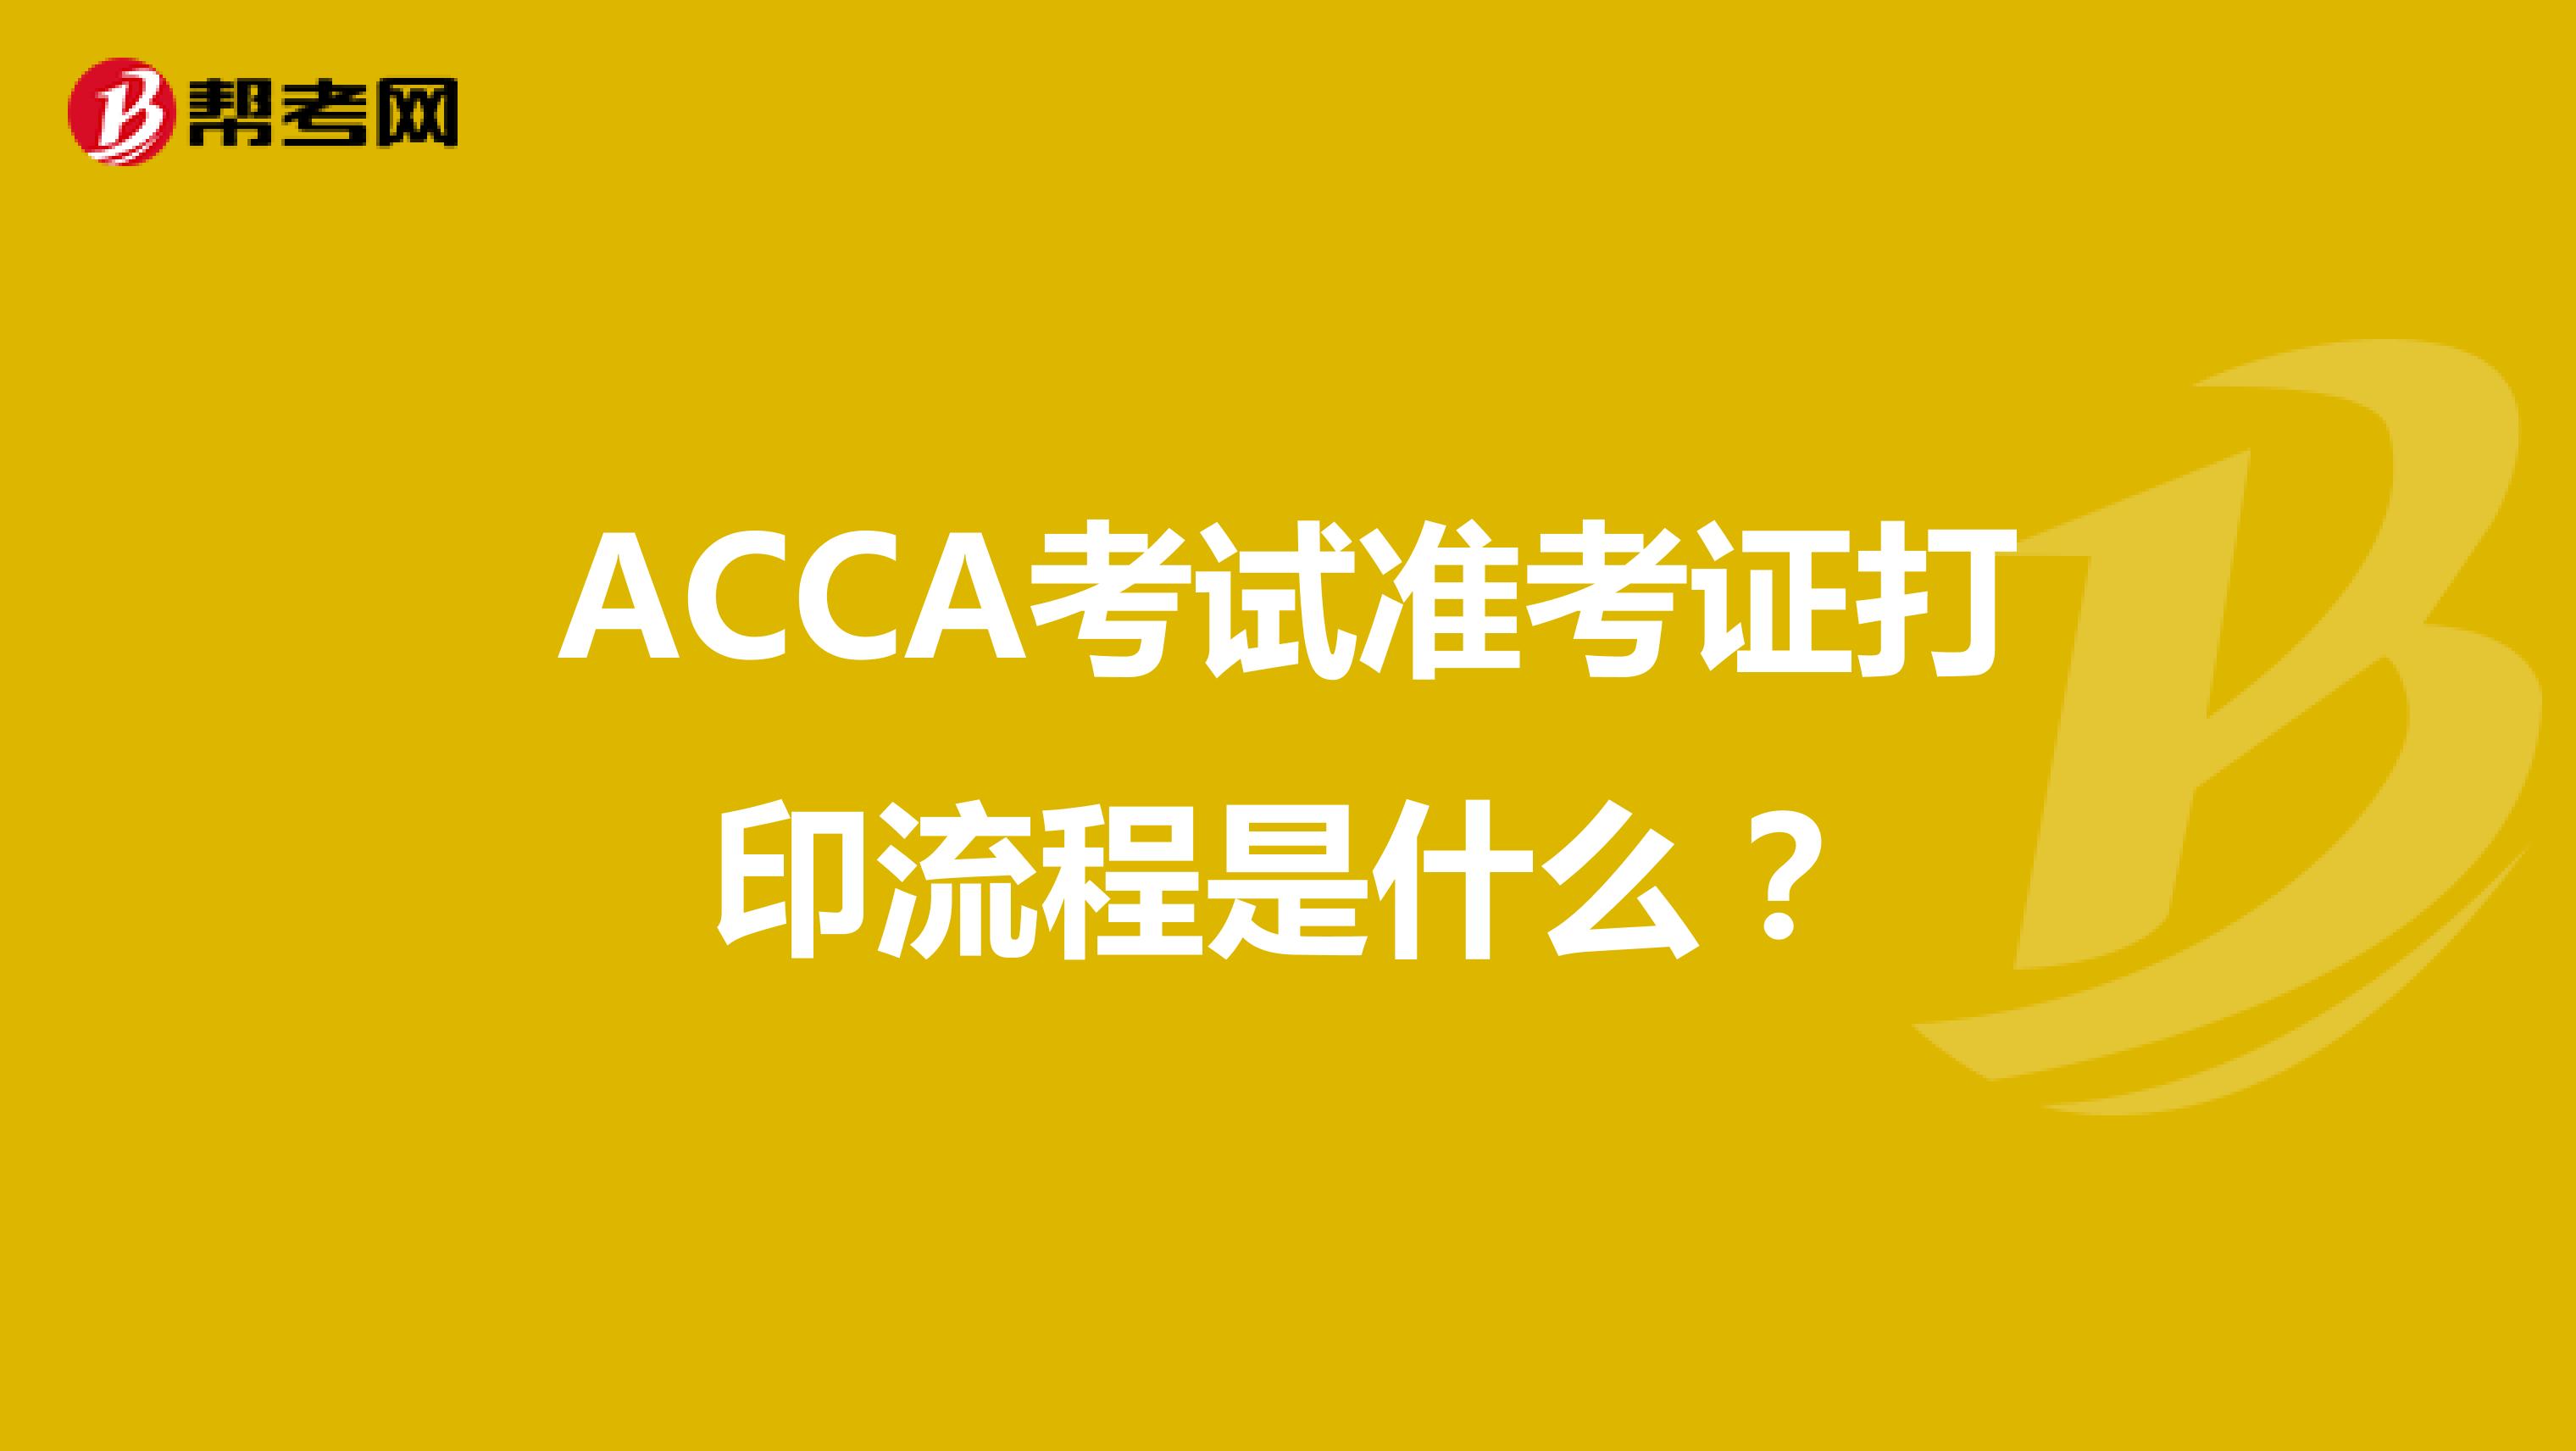 ACCA考试准考证打印流程是什么？